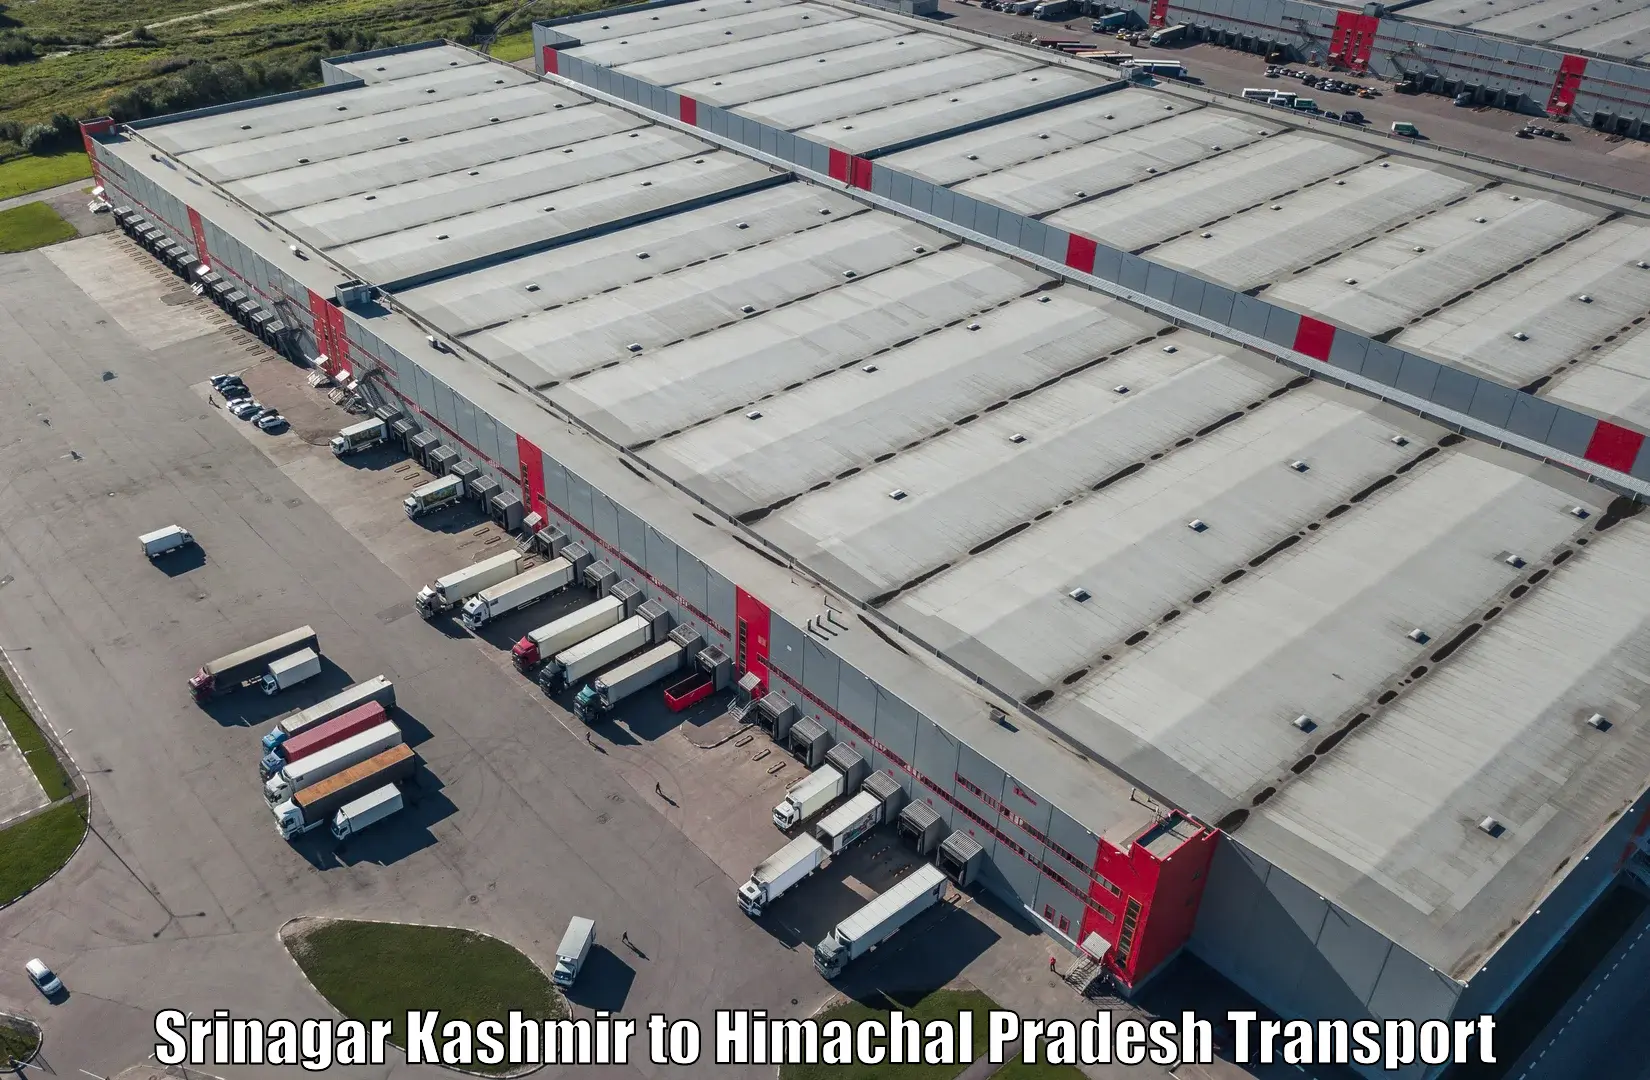 Shipping partner Srinagar Kashmir to Jeori